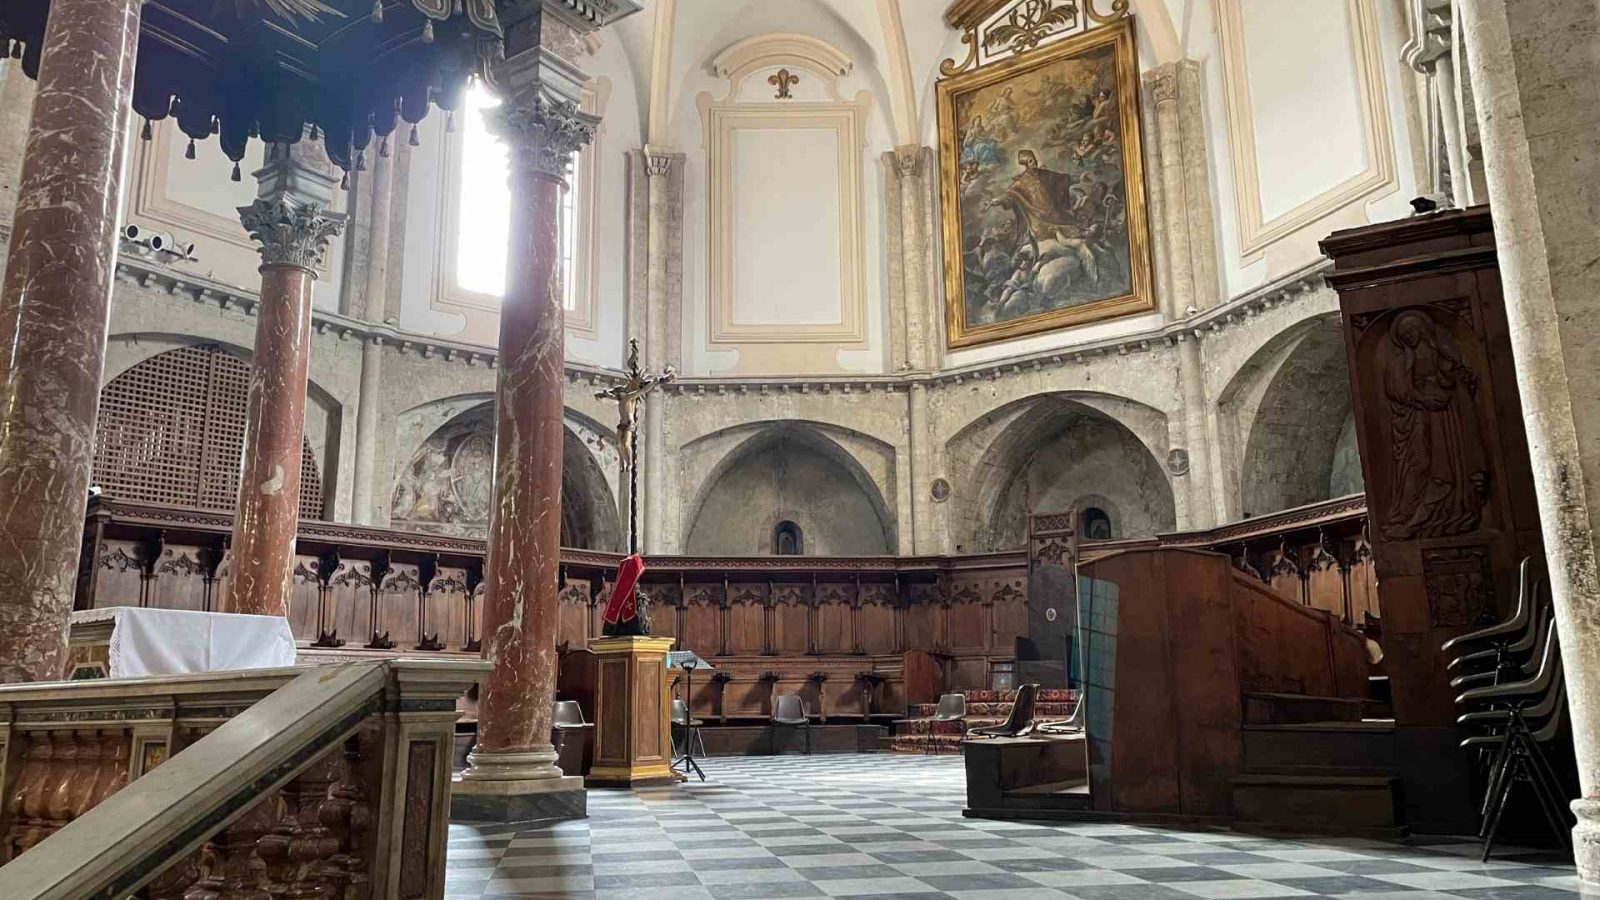 L'Abside con le sette cappelle e il coro della Cattedrale di San Giovenale